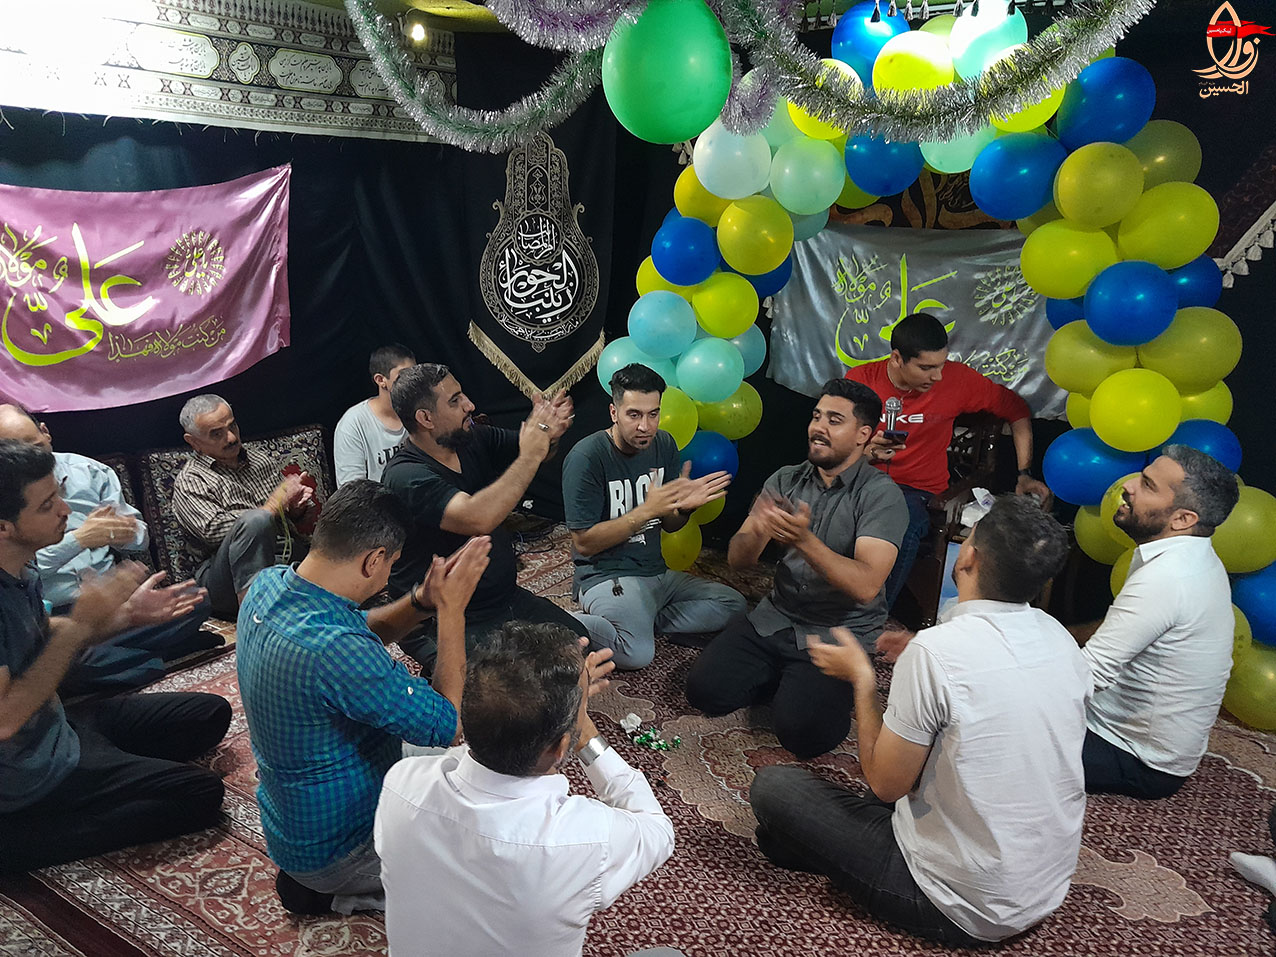 جوانان هیئت زوارالحسین در جشن مولودی خوانی عید غدیر1401 هیئت زوارالحسین